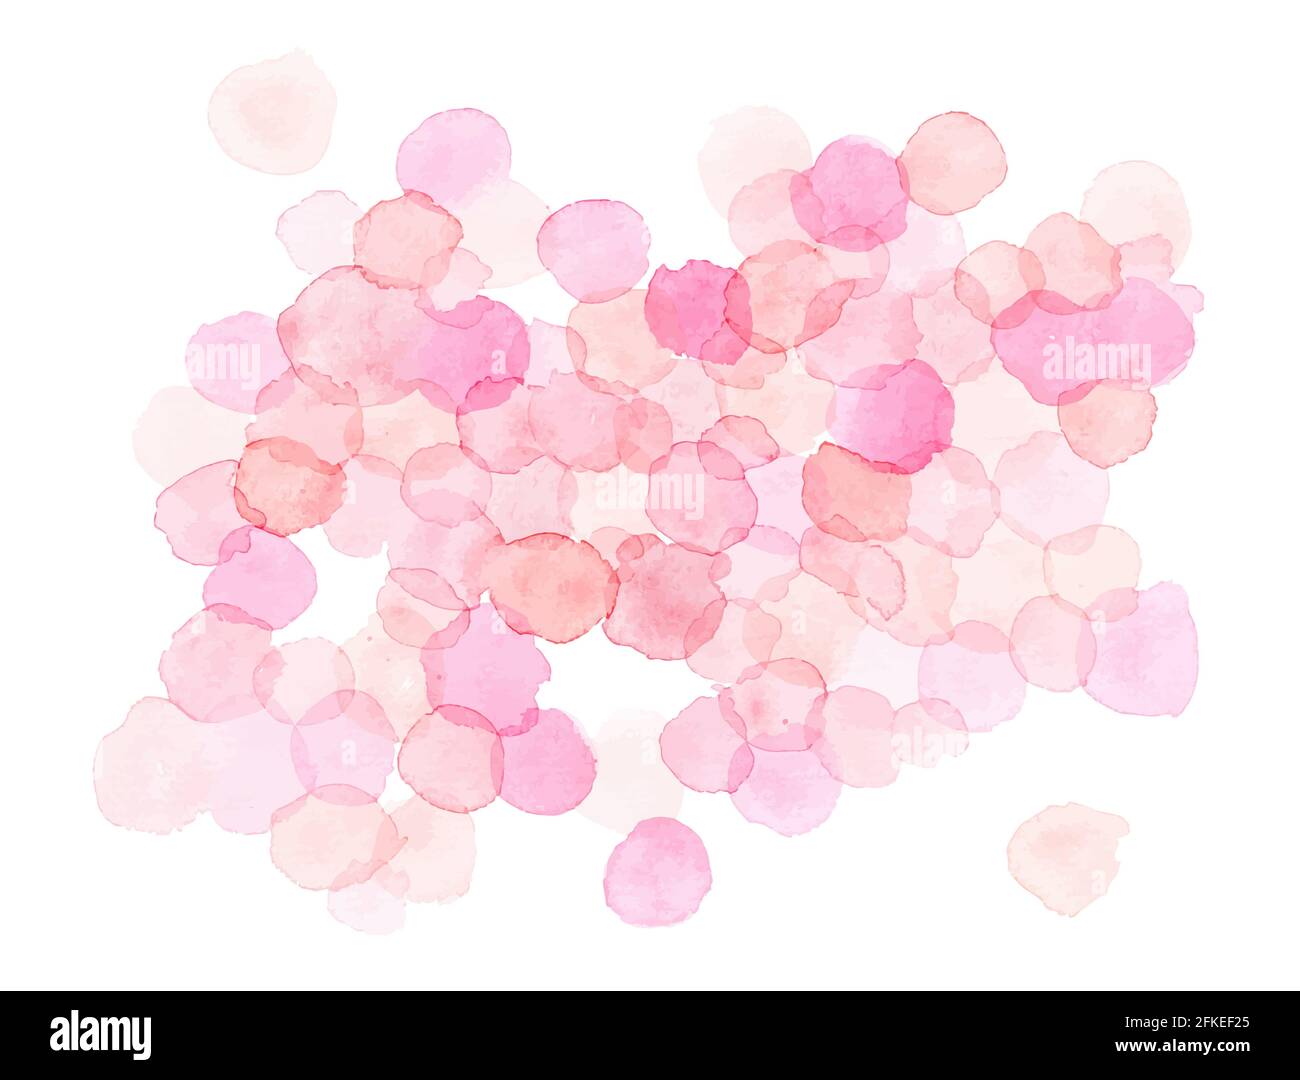 Motif à pois aquarelle. Fond abstrait de formes rondes rose clair. Bulles isolées sur blanc. Vecteur eps 10 Banque D'Images